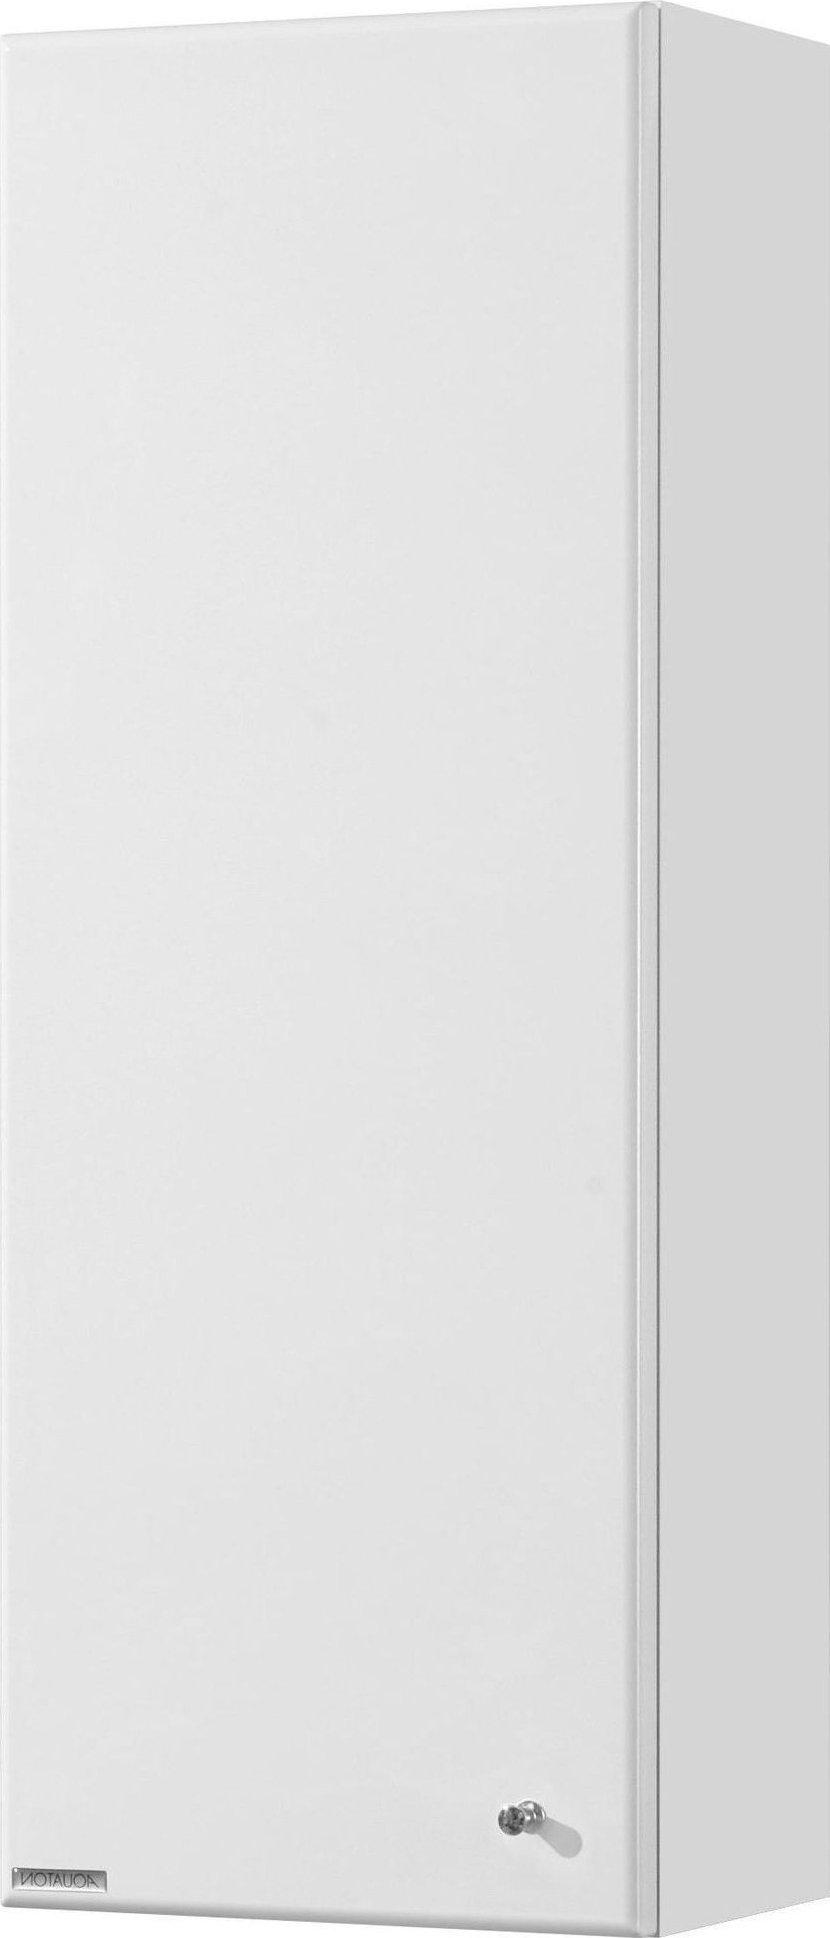 Шкаф-пенал Акватон Симпл 31x82 см белый 1A012503SL01L левый